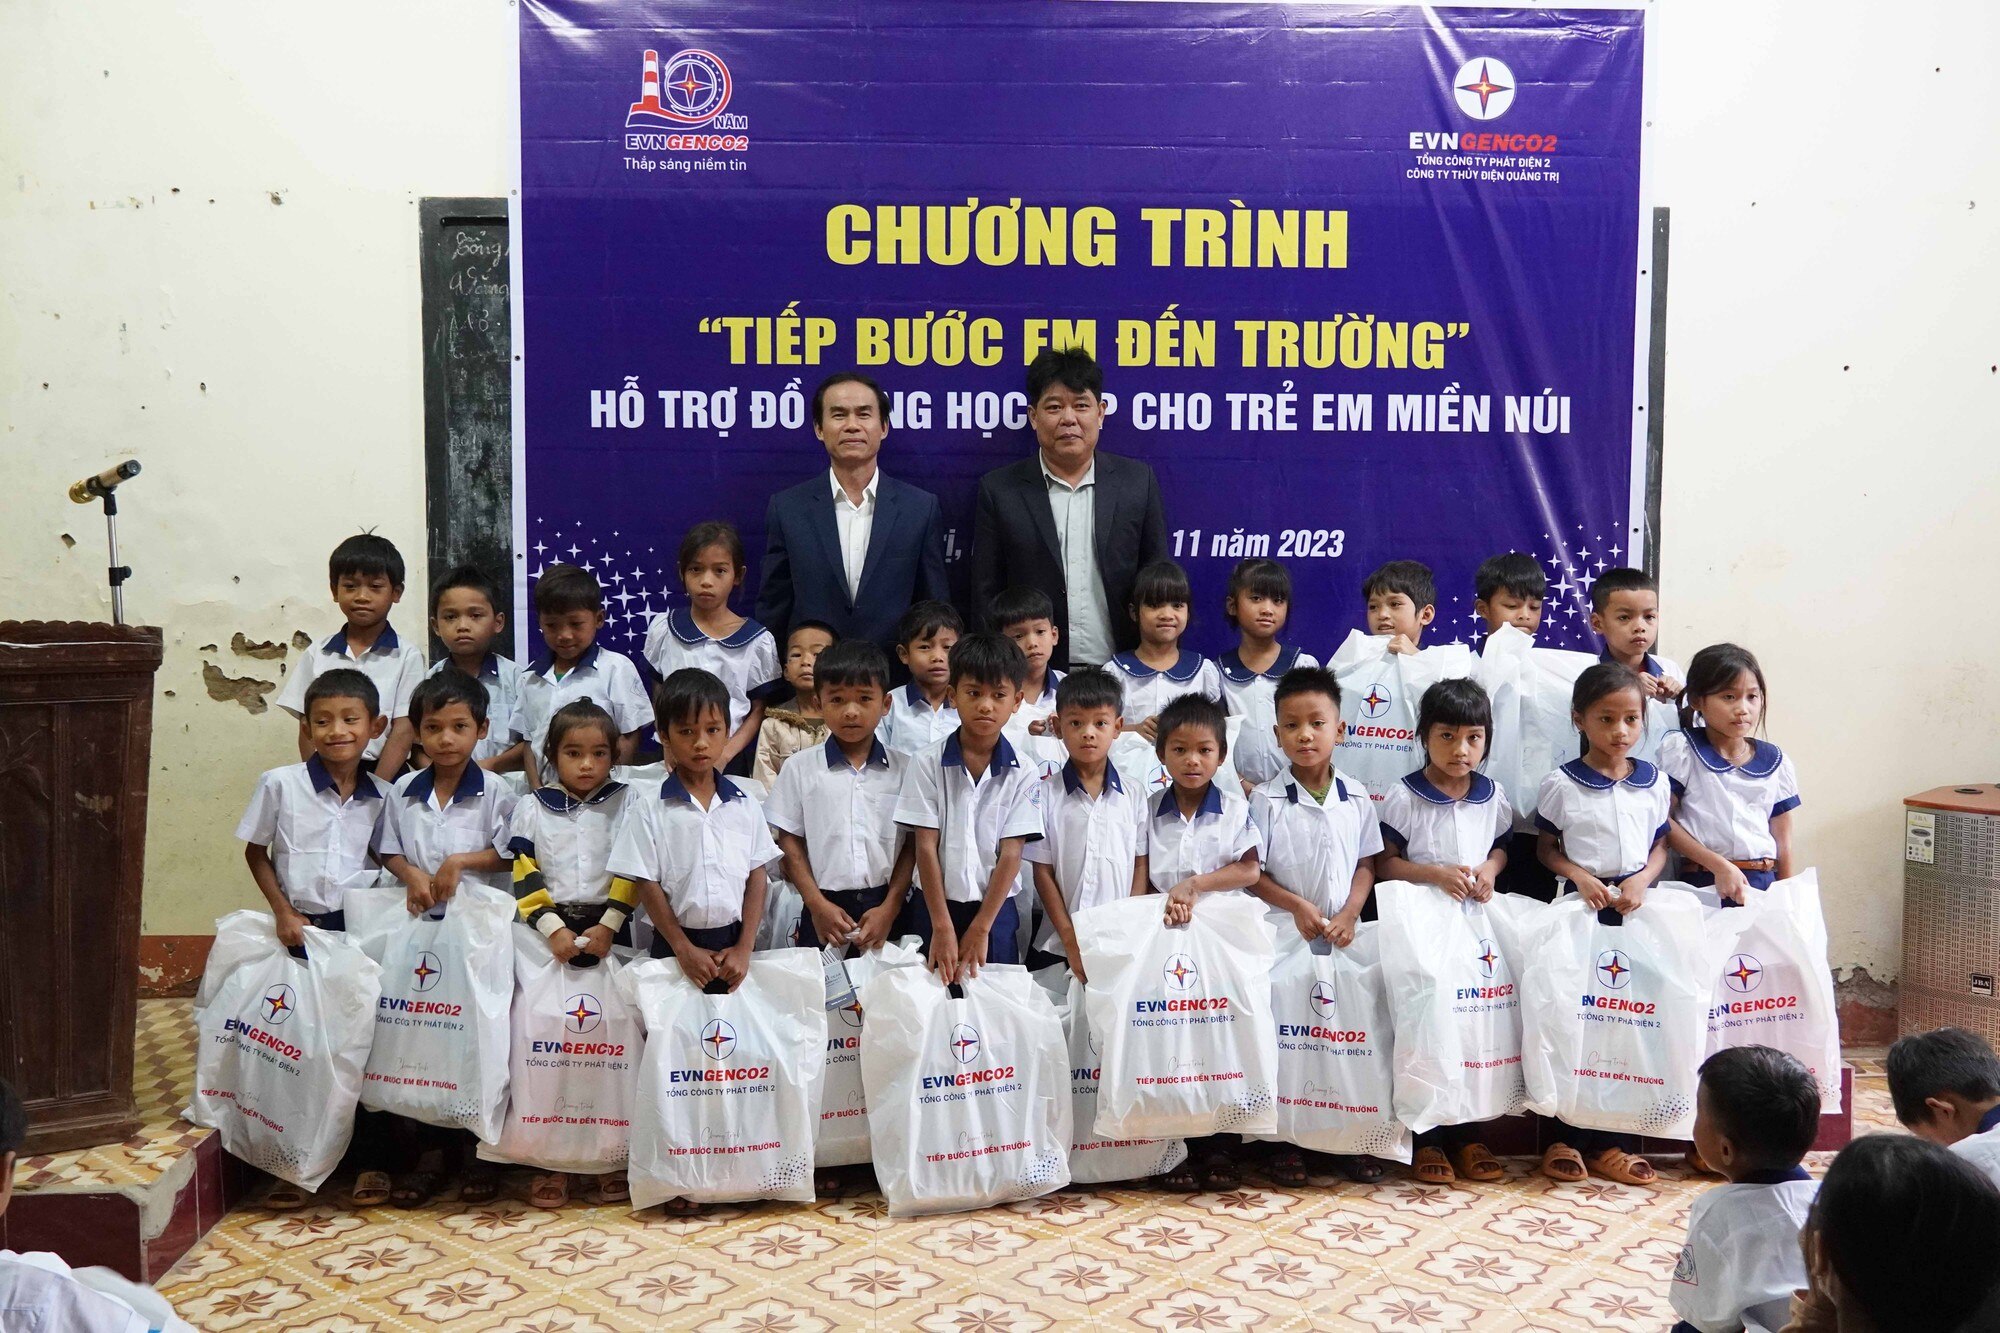 Công ty Thủy điện Quảng Trị tặng quà cho học sinh vùng cao - Ảnh 1.